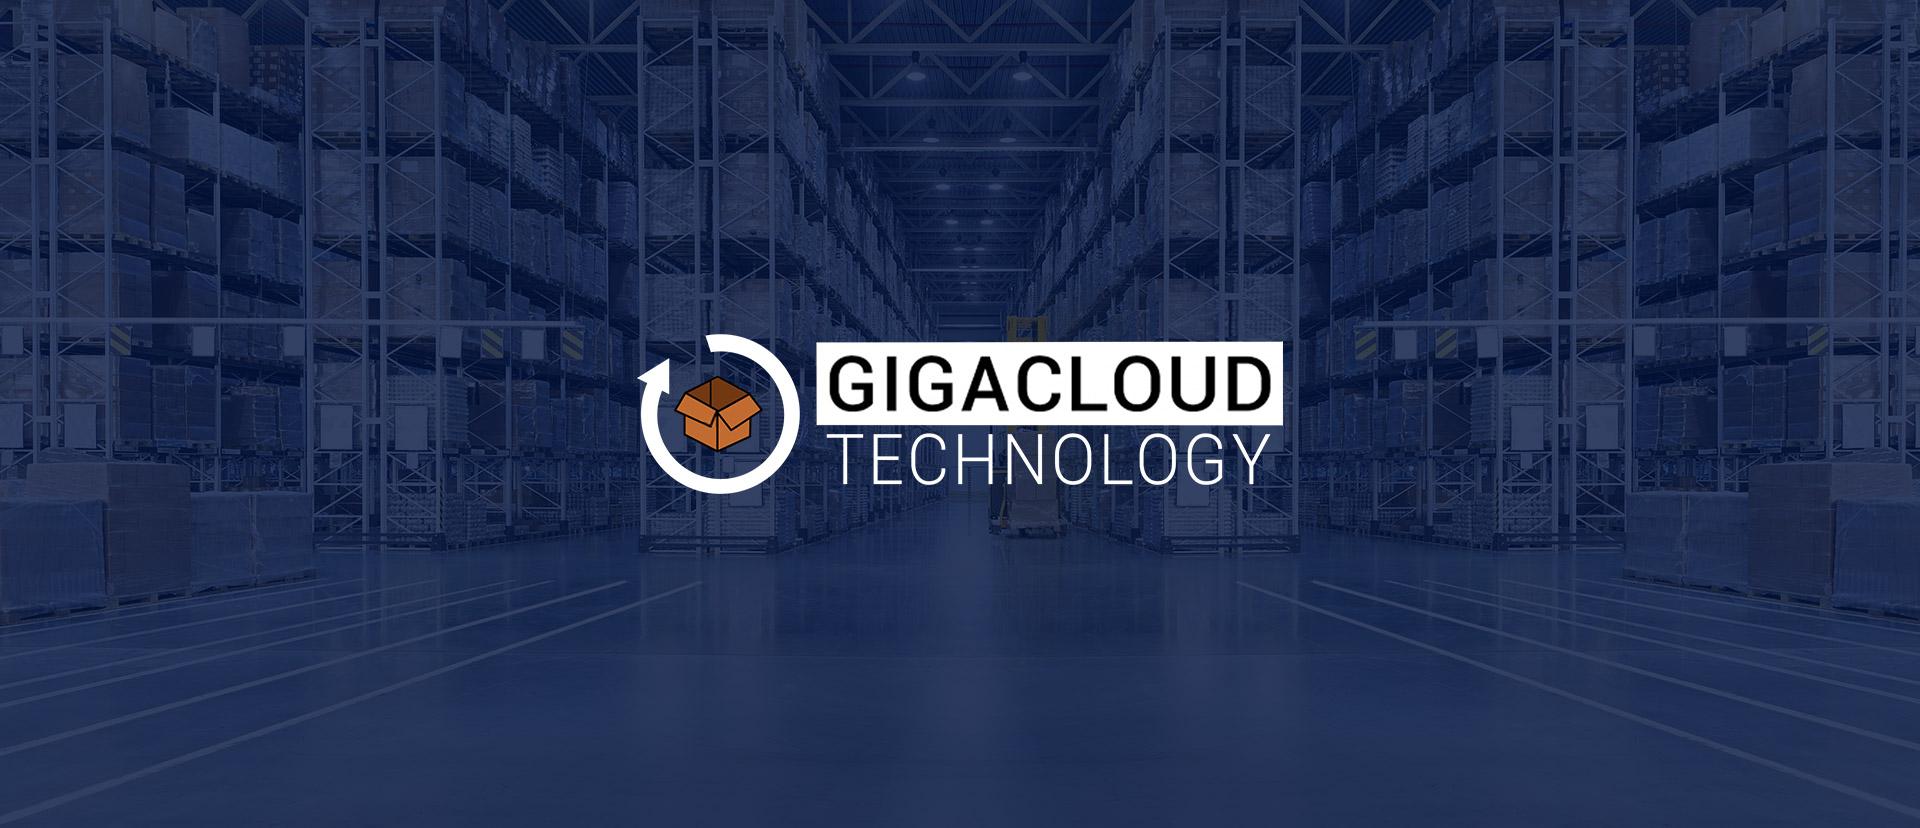 الاكتتاب العام لشركة GigaCloud Technology: سوق للشركات الصغيرة والمتوسطة